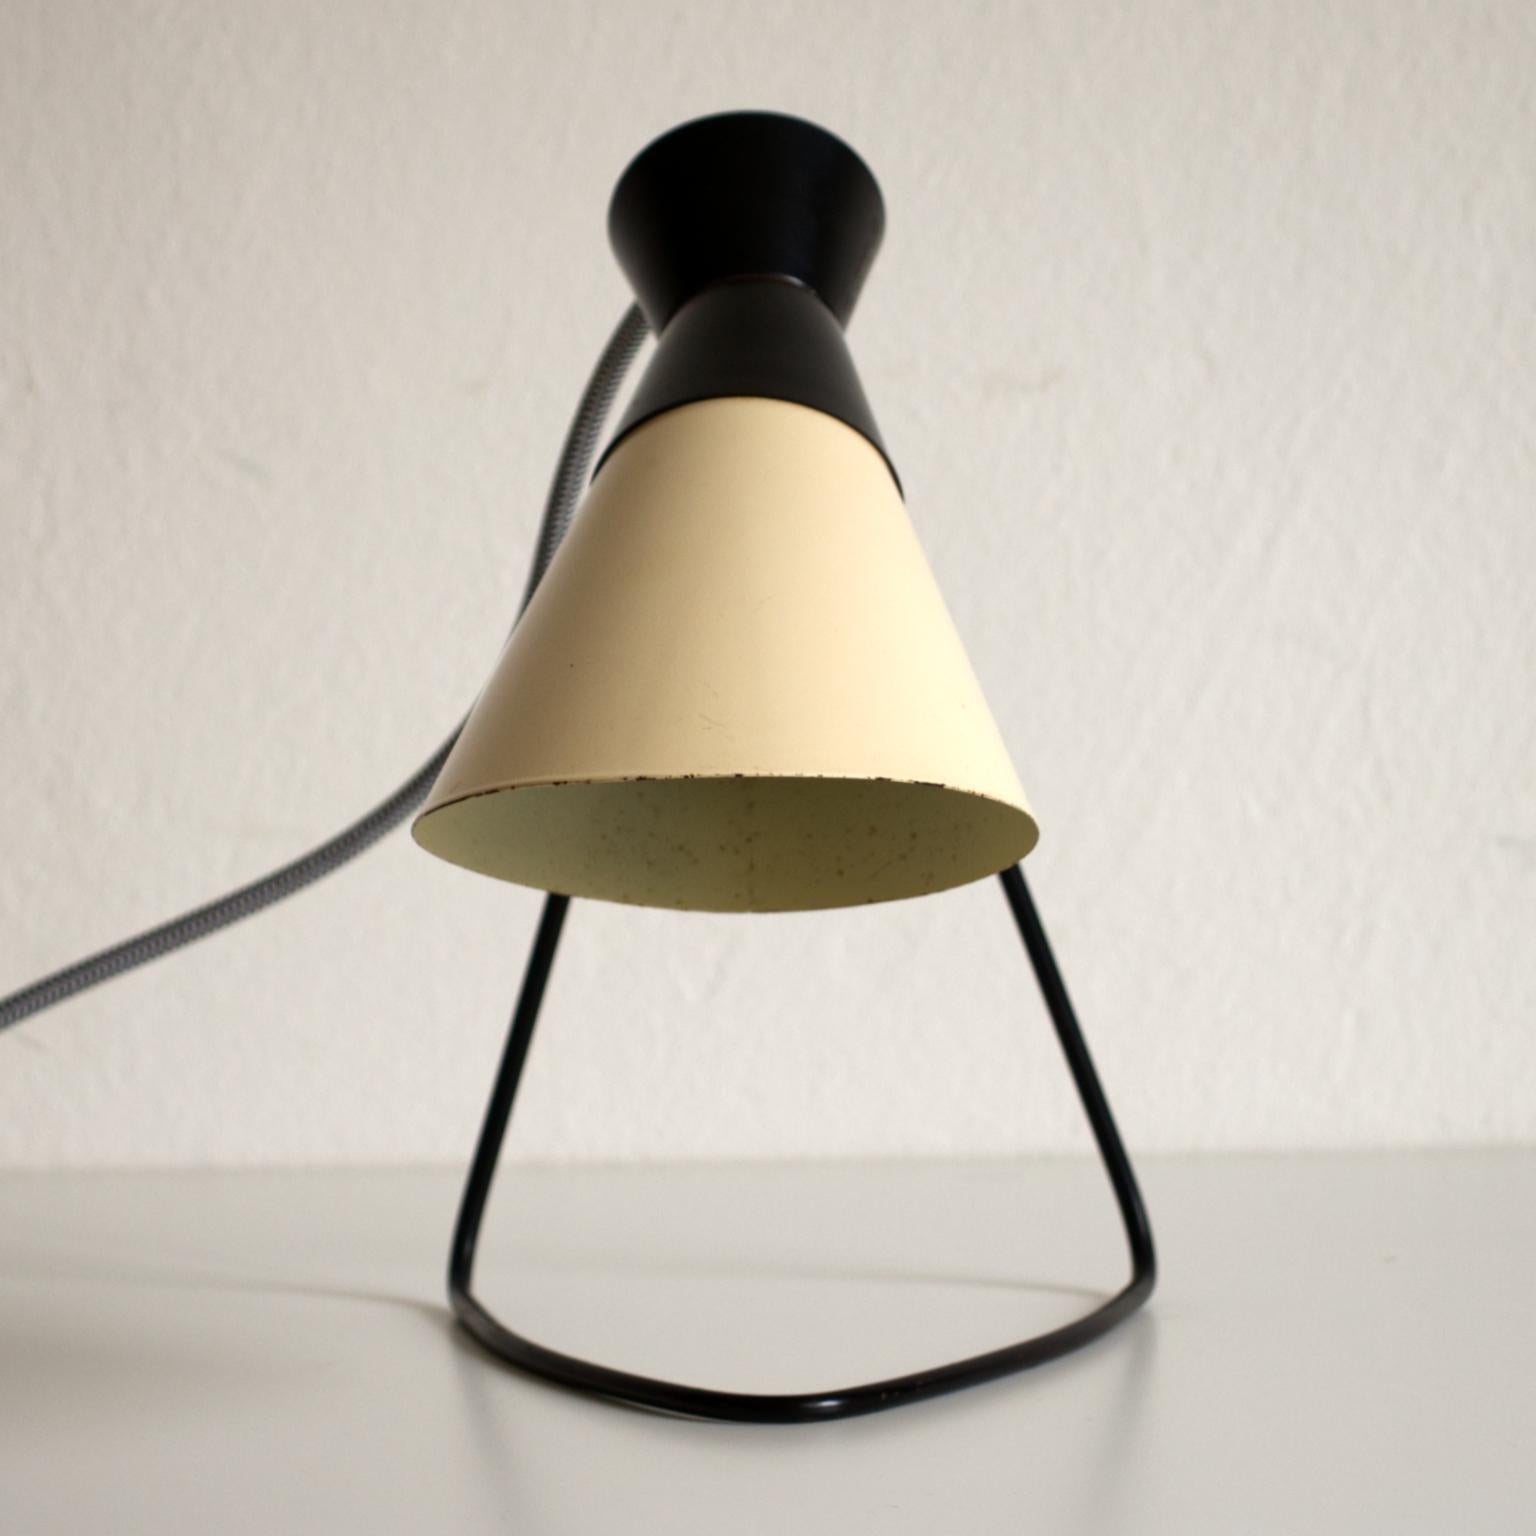 Lampe de table vintage conçue par Josef Hurka pour Napako Czechoslovakia dans un état original avec seulement des signes mineurs d'utilisation.
Fonctionne avec une ampoule E14.
La lampe peut être utilisée partout dans le monde avec un adaptateur de